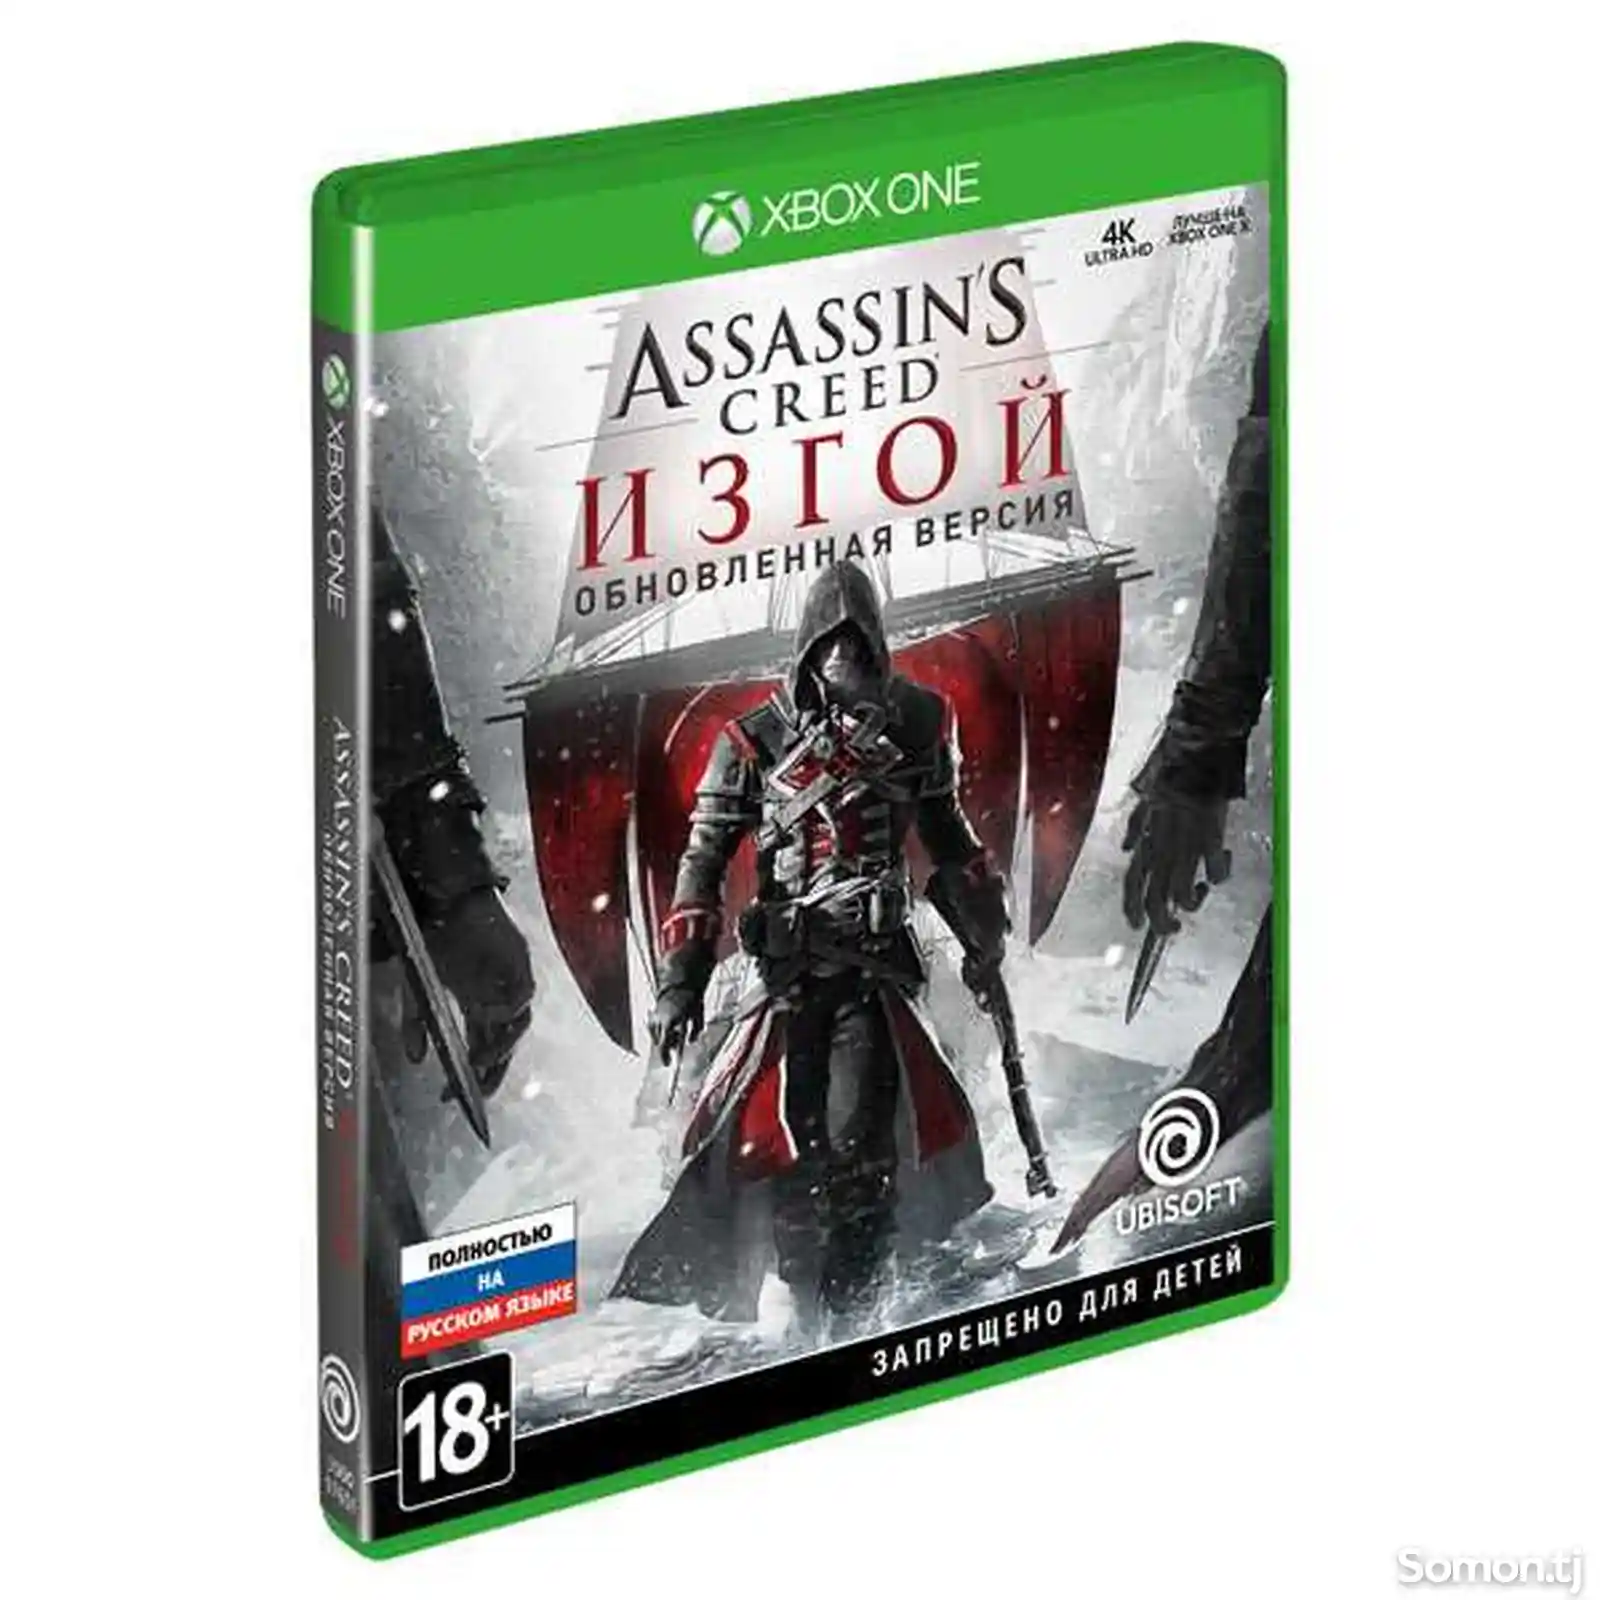 Xbox One игра Ubisoft Assassin's Creed Изгой-1